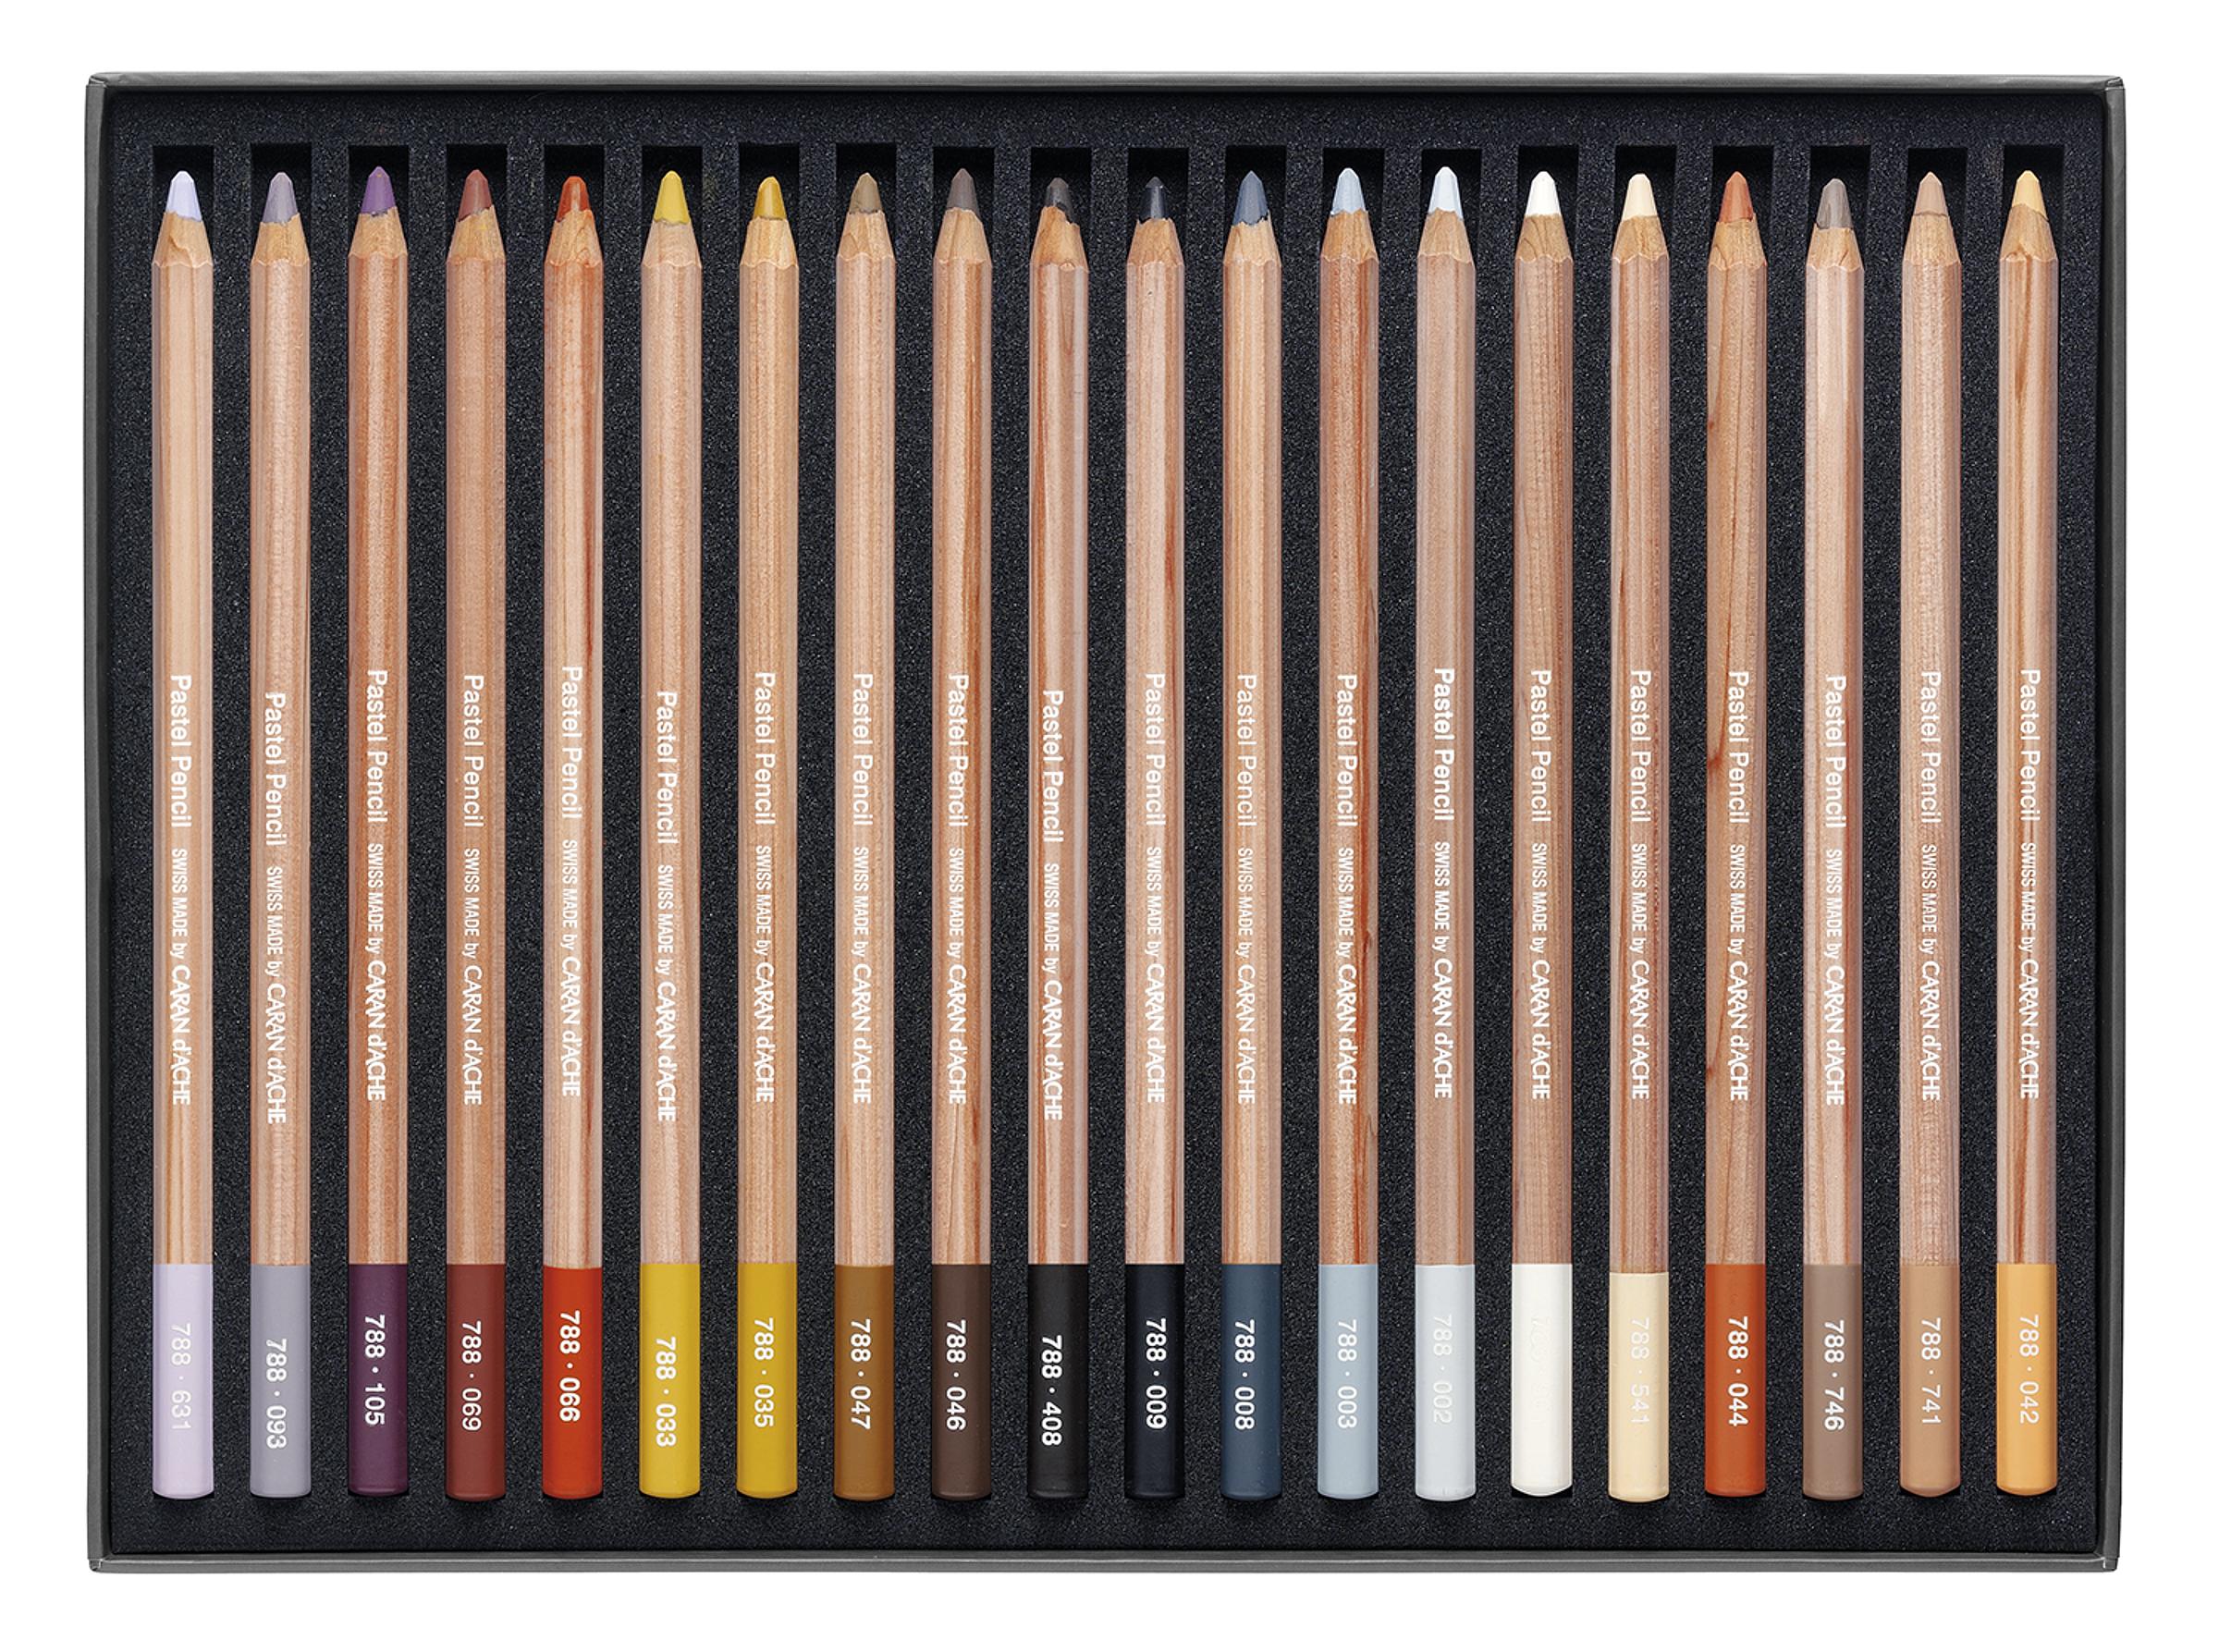 Crayon gomme Stick BM2 Factis 100 mm - Matériel dessin